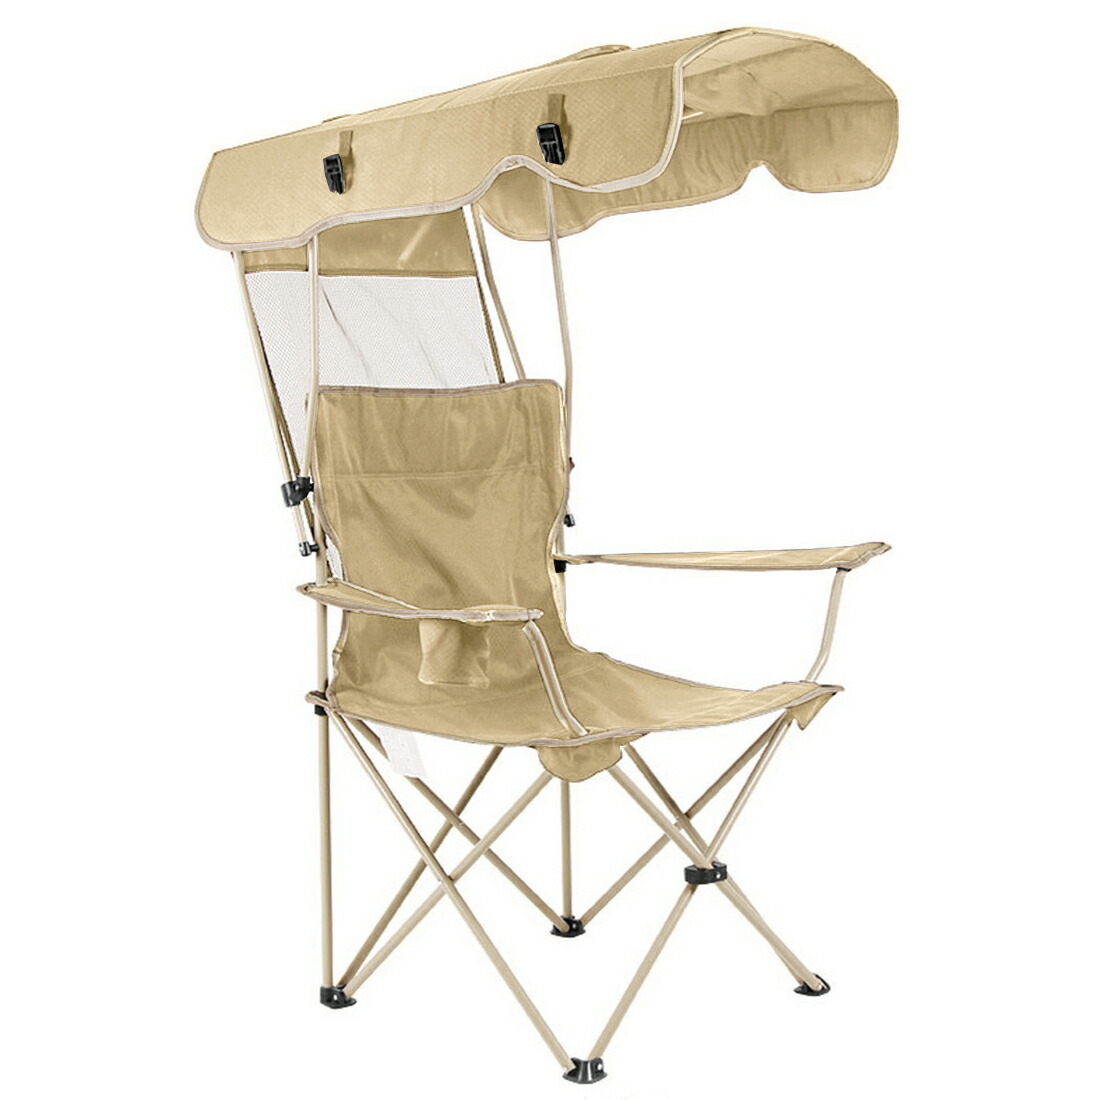 屋根付きアウトドアチェア 折りたたみ椅子 サンシェードチェアー 折り畳み アウトドア キャンプ 海 日焼け対策 sl1302-ca